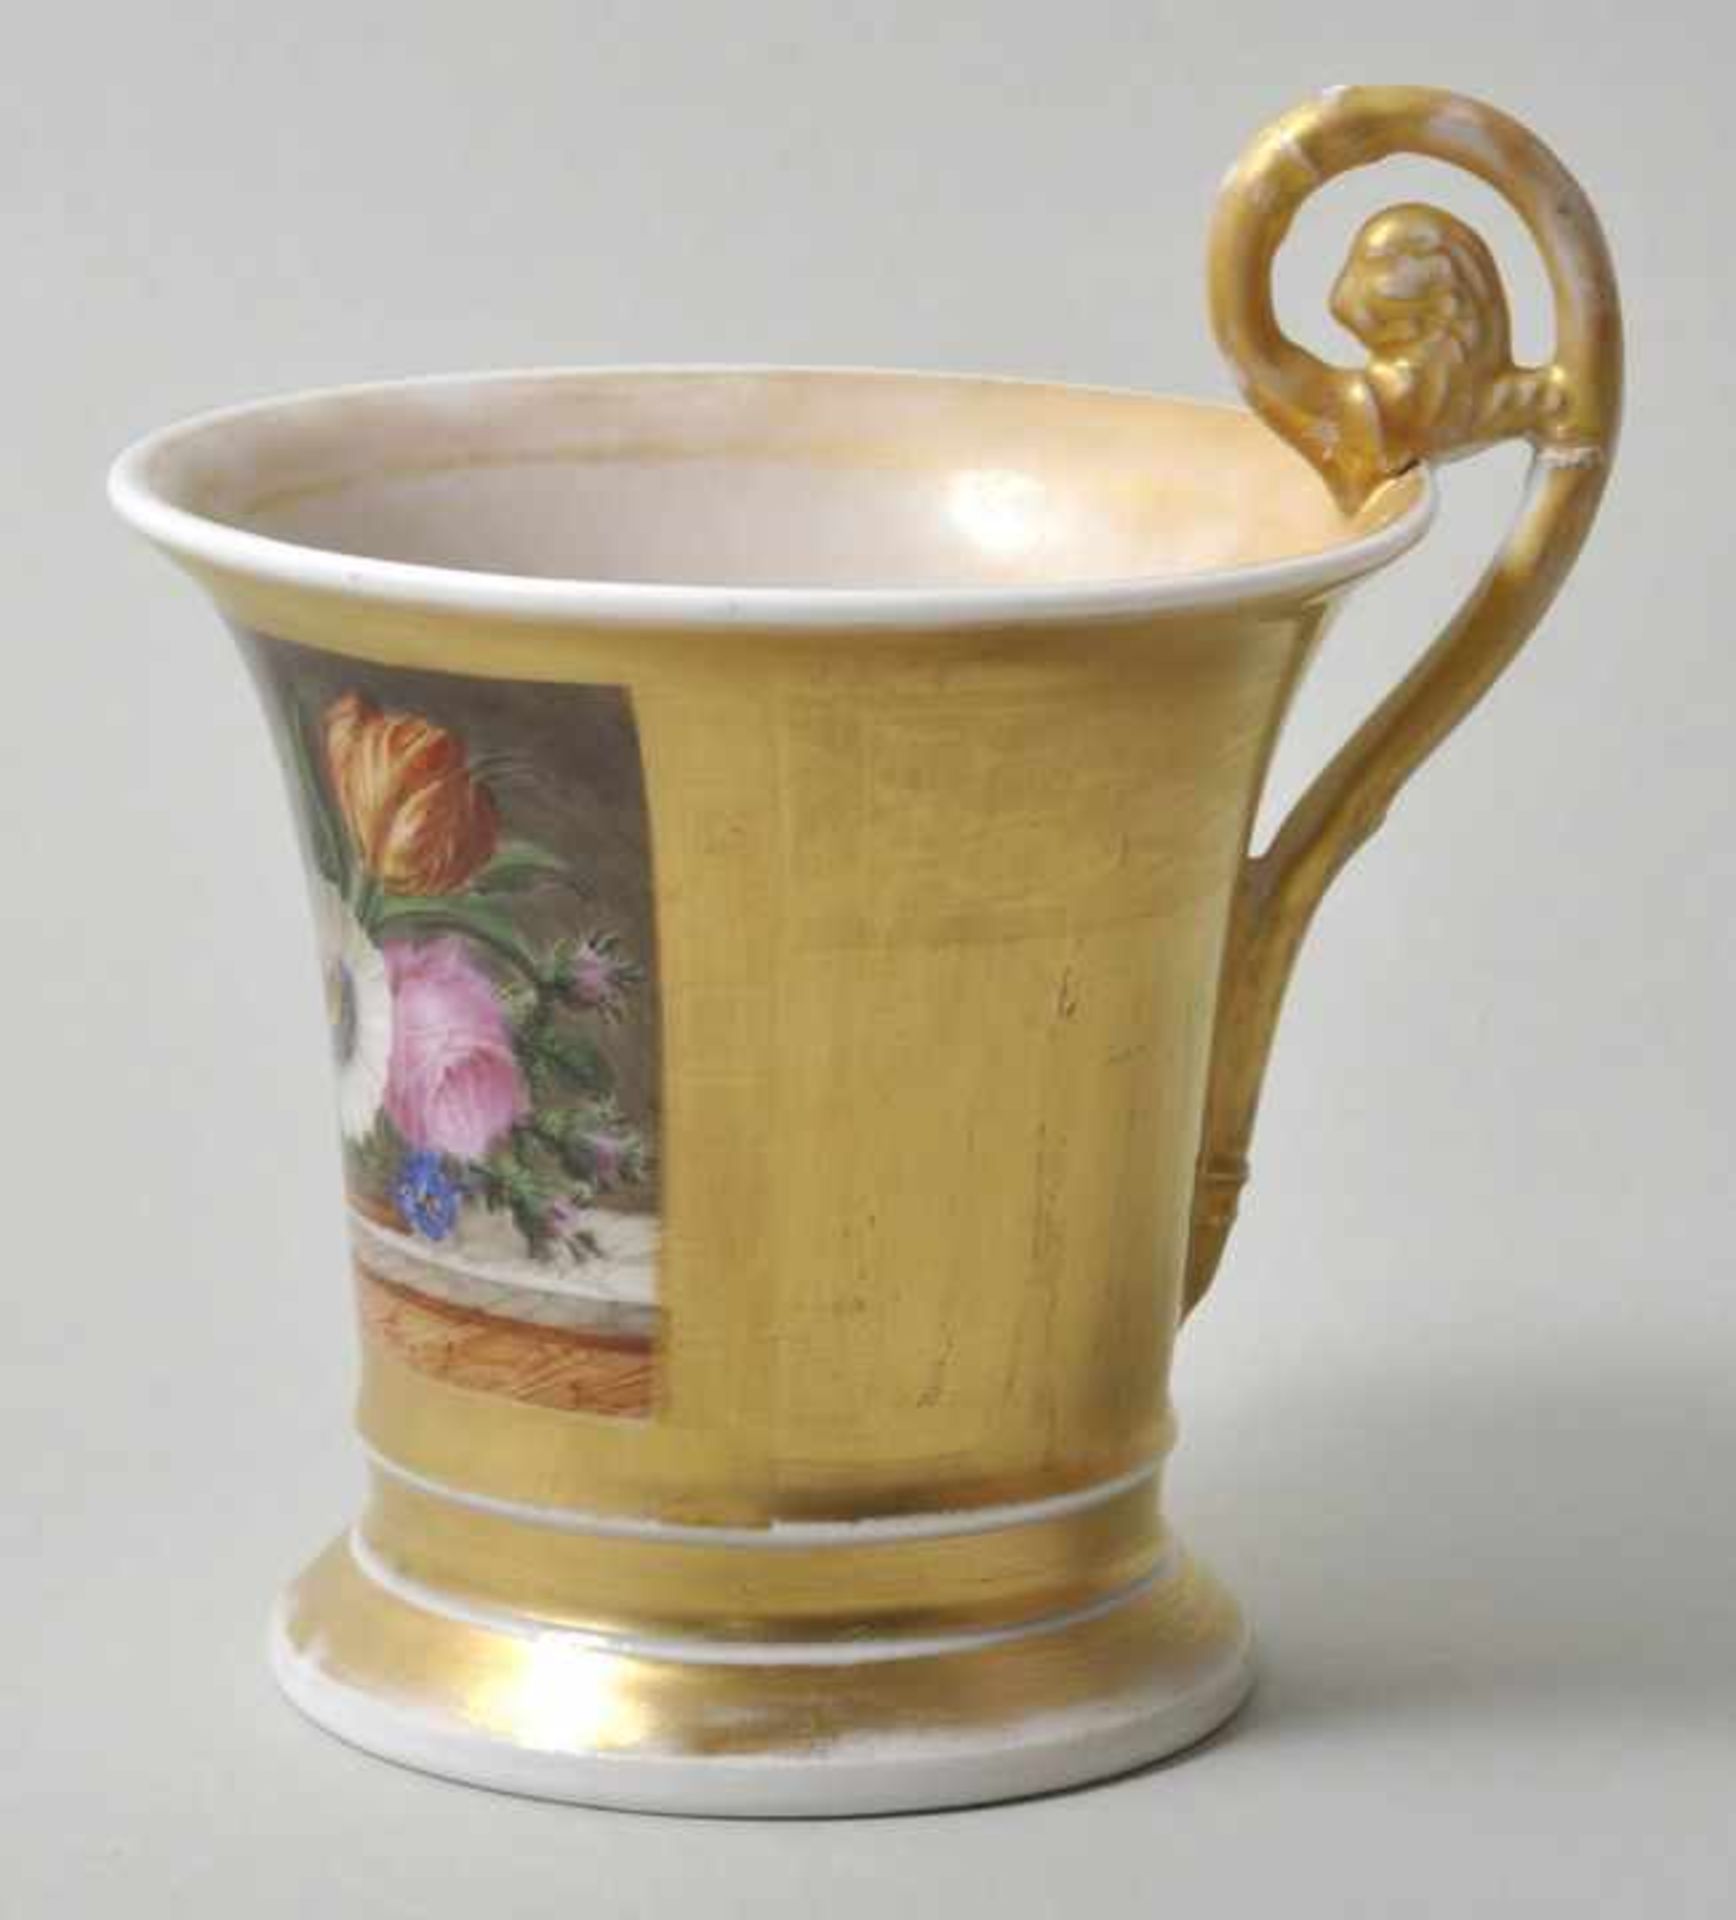 Tasse mit Stilllebenmalerei, 19. Jh.Porzellan, ausschwingende Form mit Volutenhenkel, radierter - Bild 4 aus 4